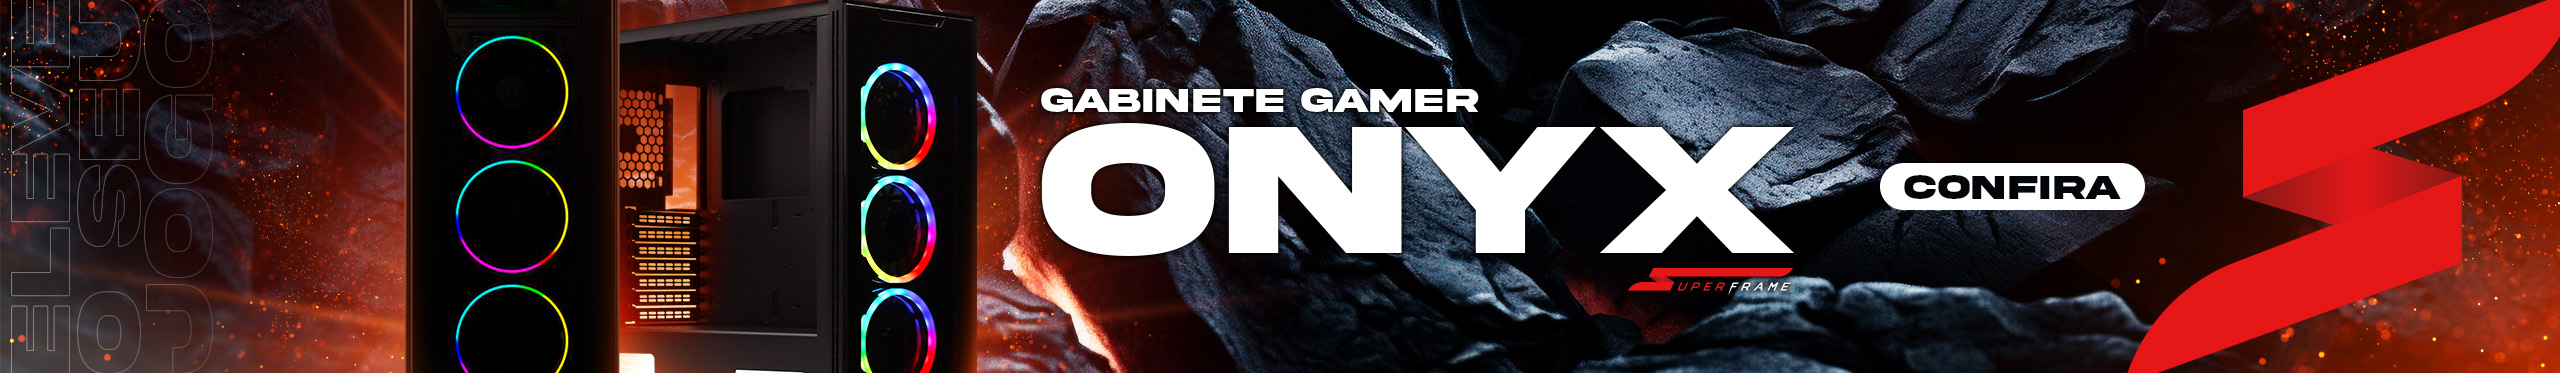 Gabinete Gamer SuperFrame Onix | Jogue ao máximo. Confira!